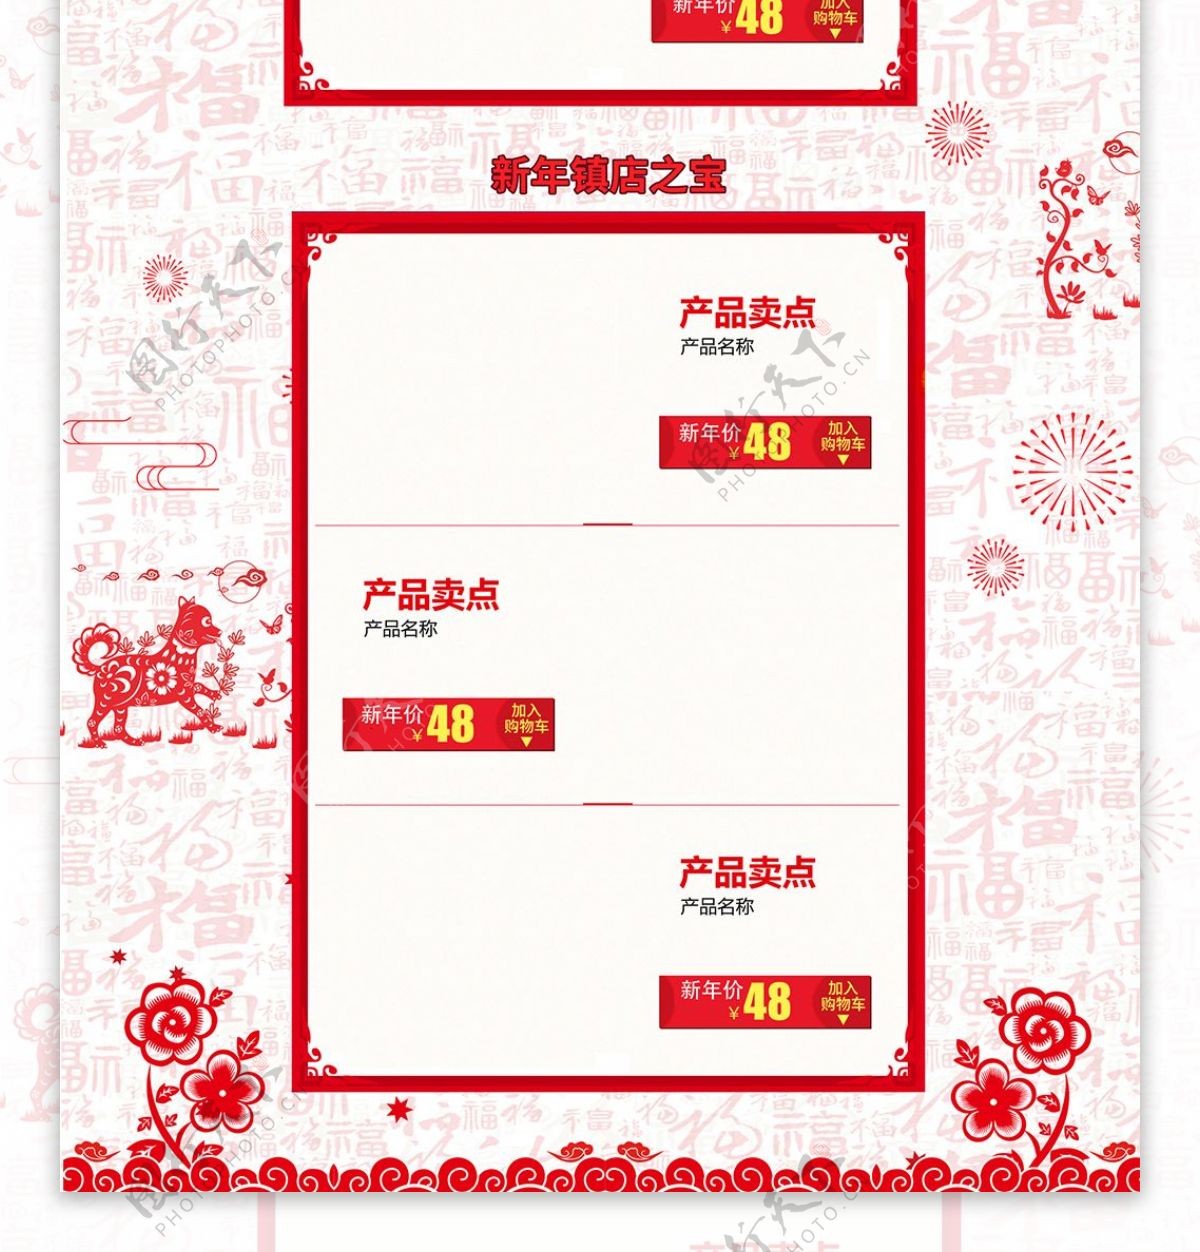 淘宝天猫中国风把爱带回家新年首页促销模板